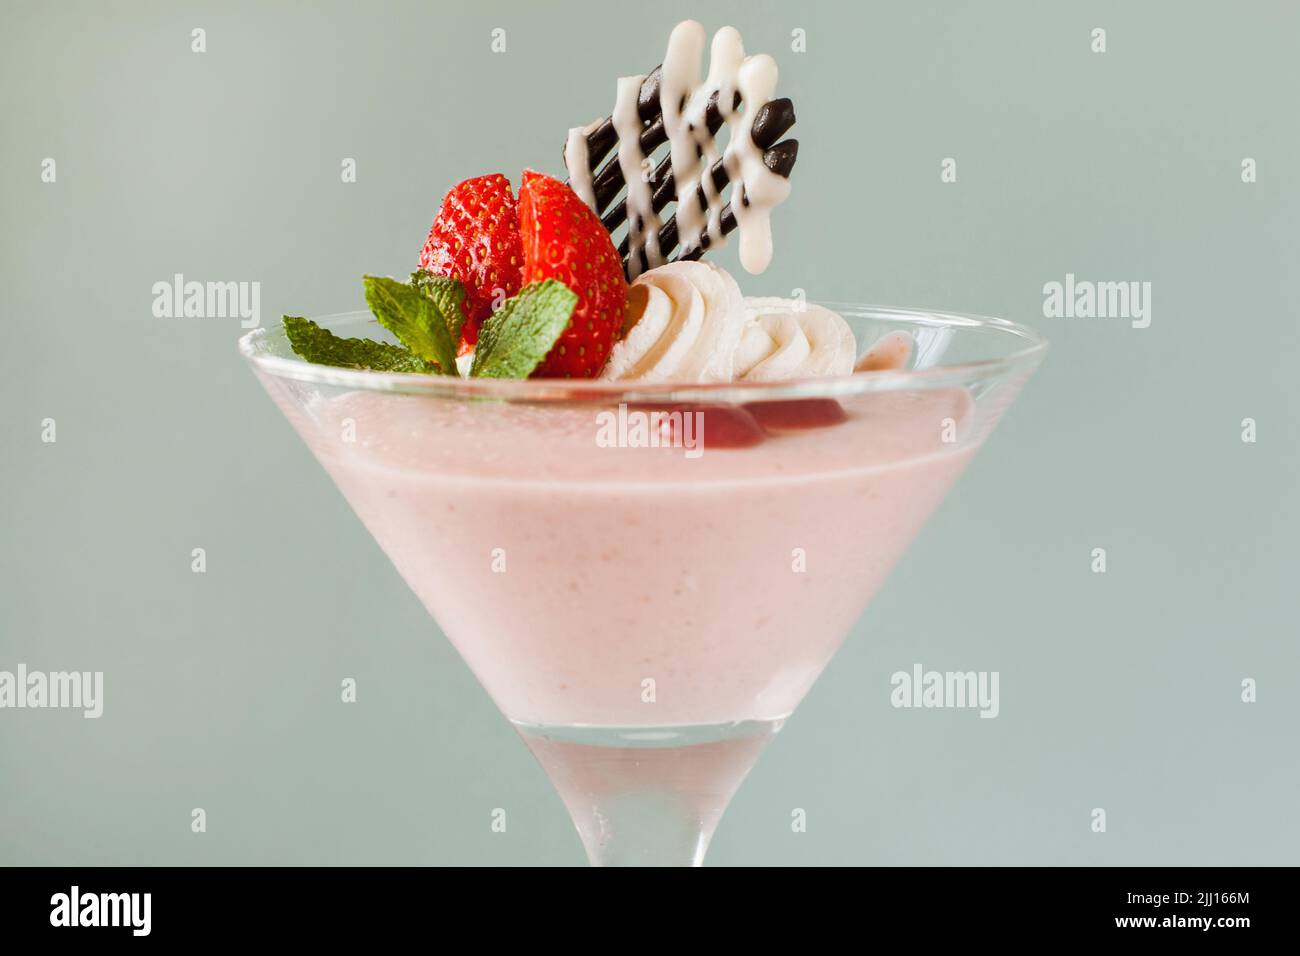 Cremiges Erdbeerdessert auf hellgrauem Hintergrund Stockfoto